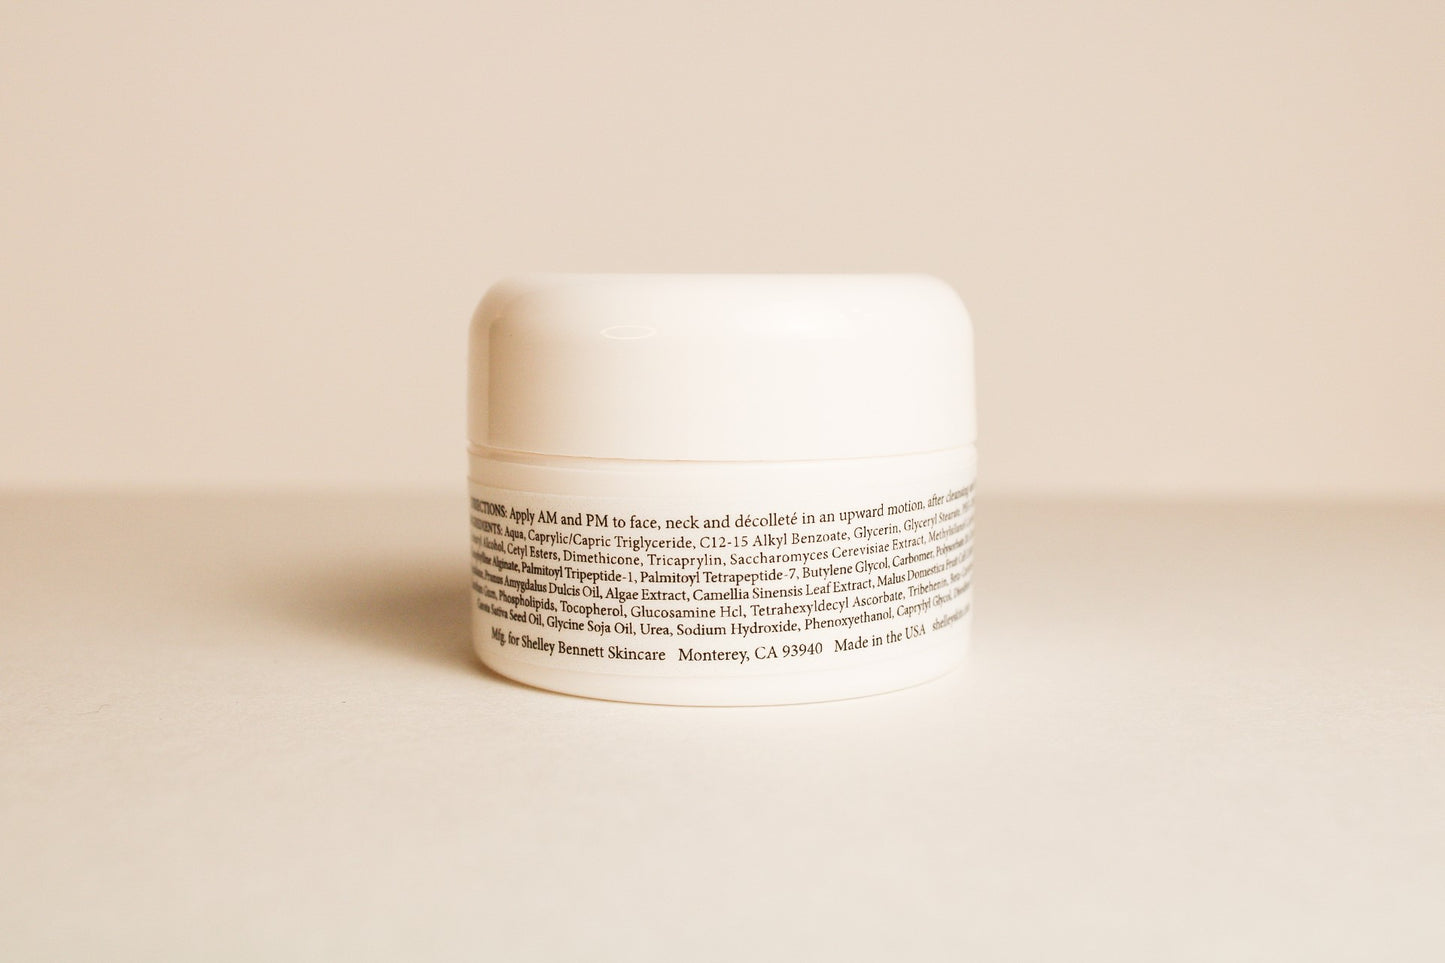 Shelley Bennett Skincare Face, Neck, & Decollete Reserve Cream  0.5 oz.